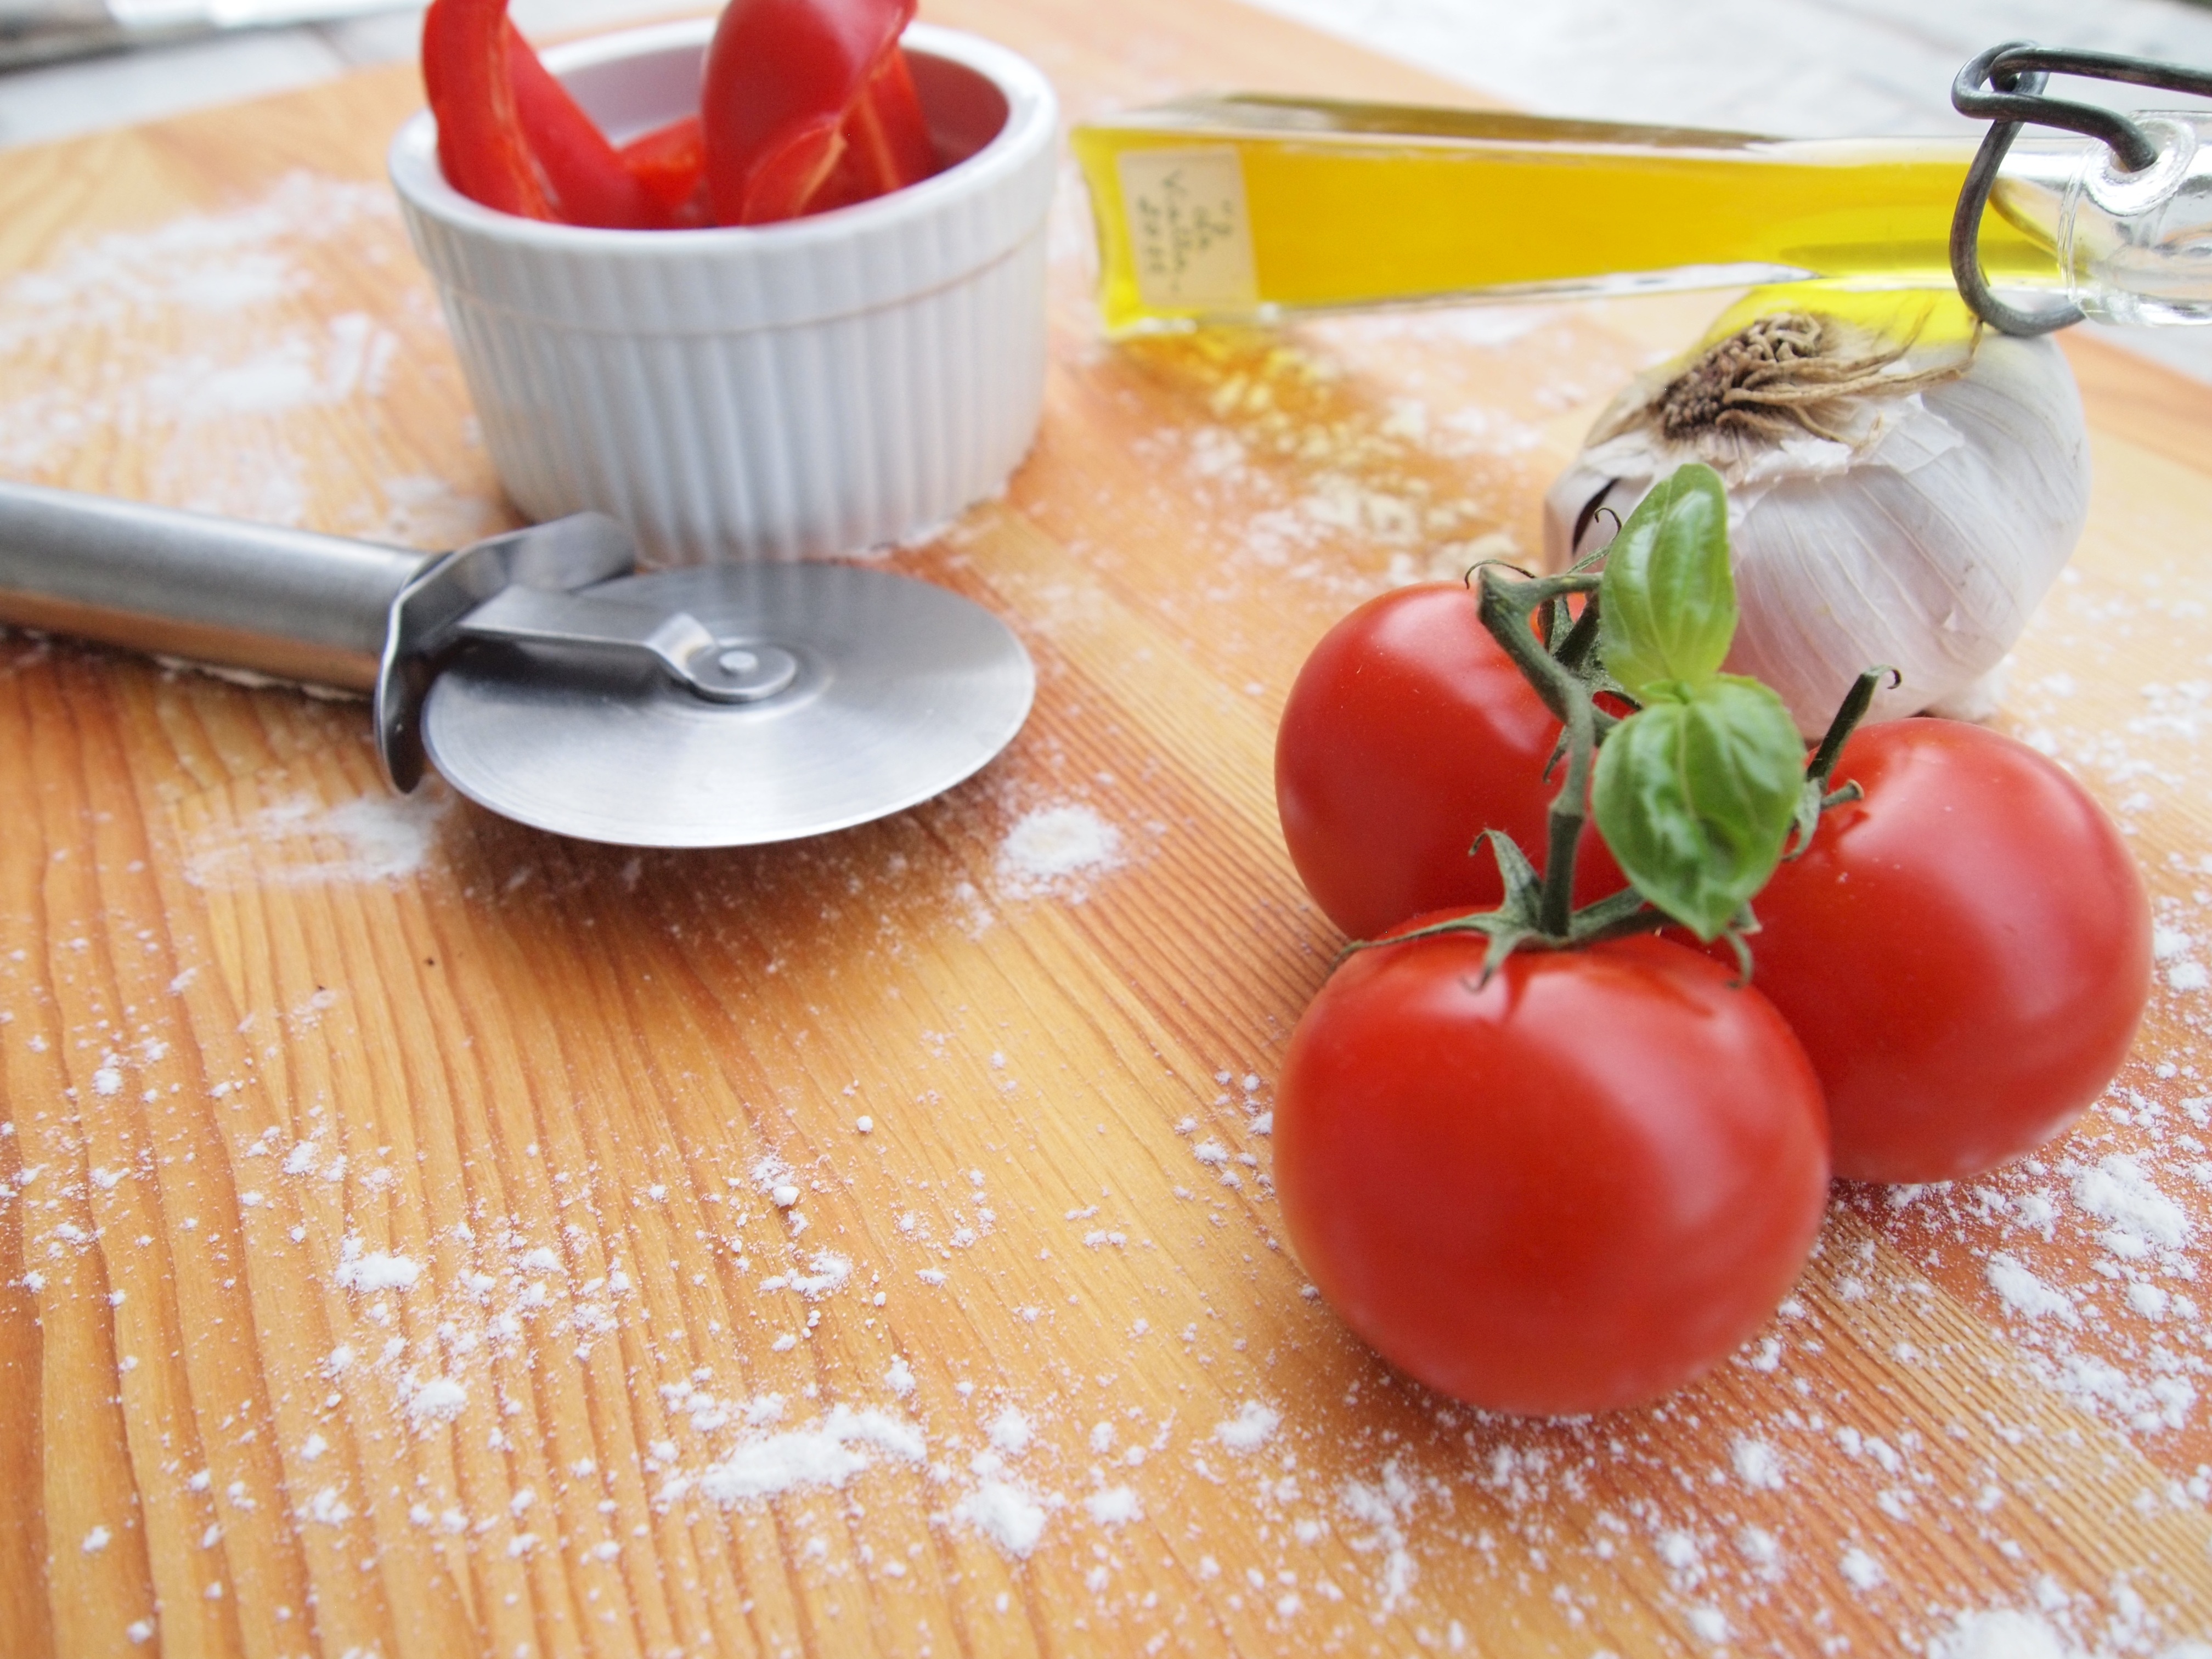 לבשל כמו באיטליה: סדנת בישול איטלקי טבעונית